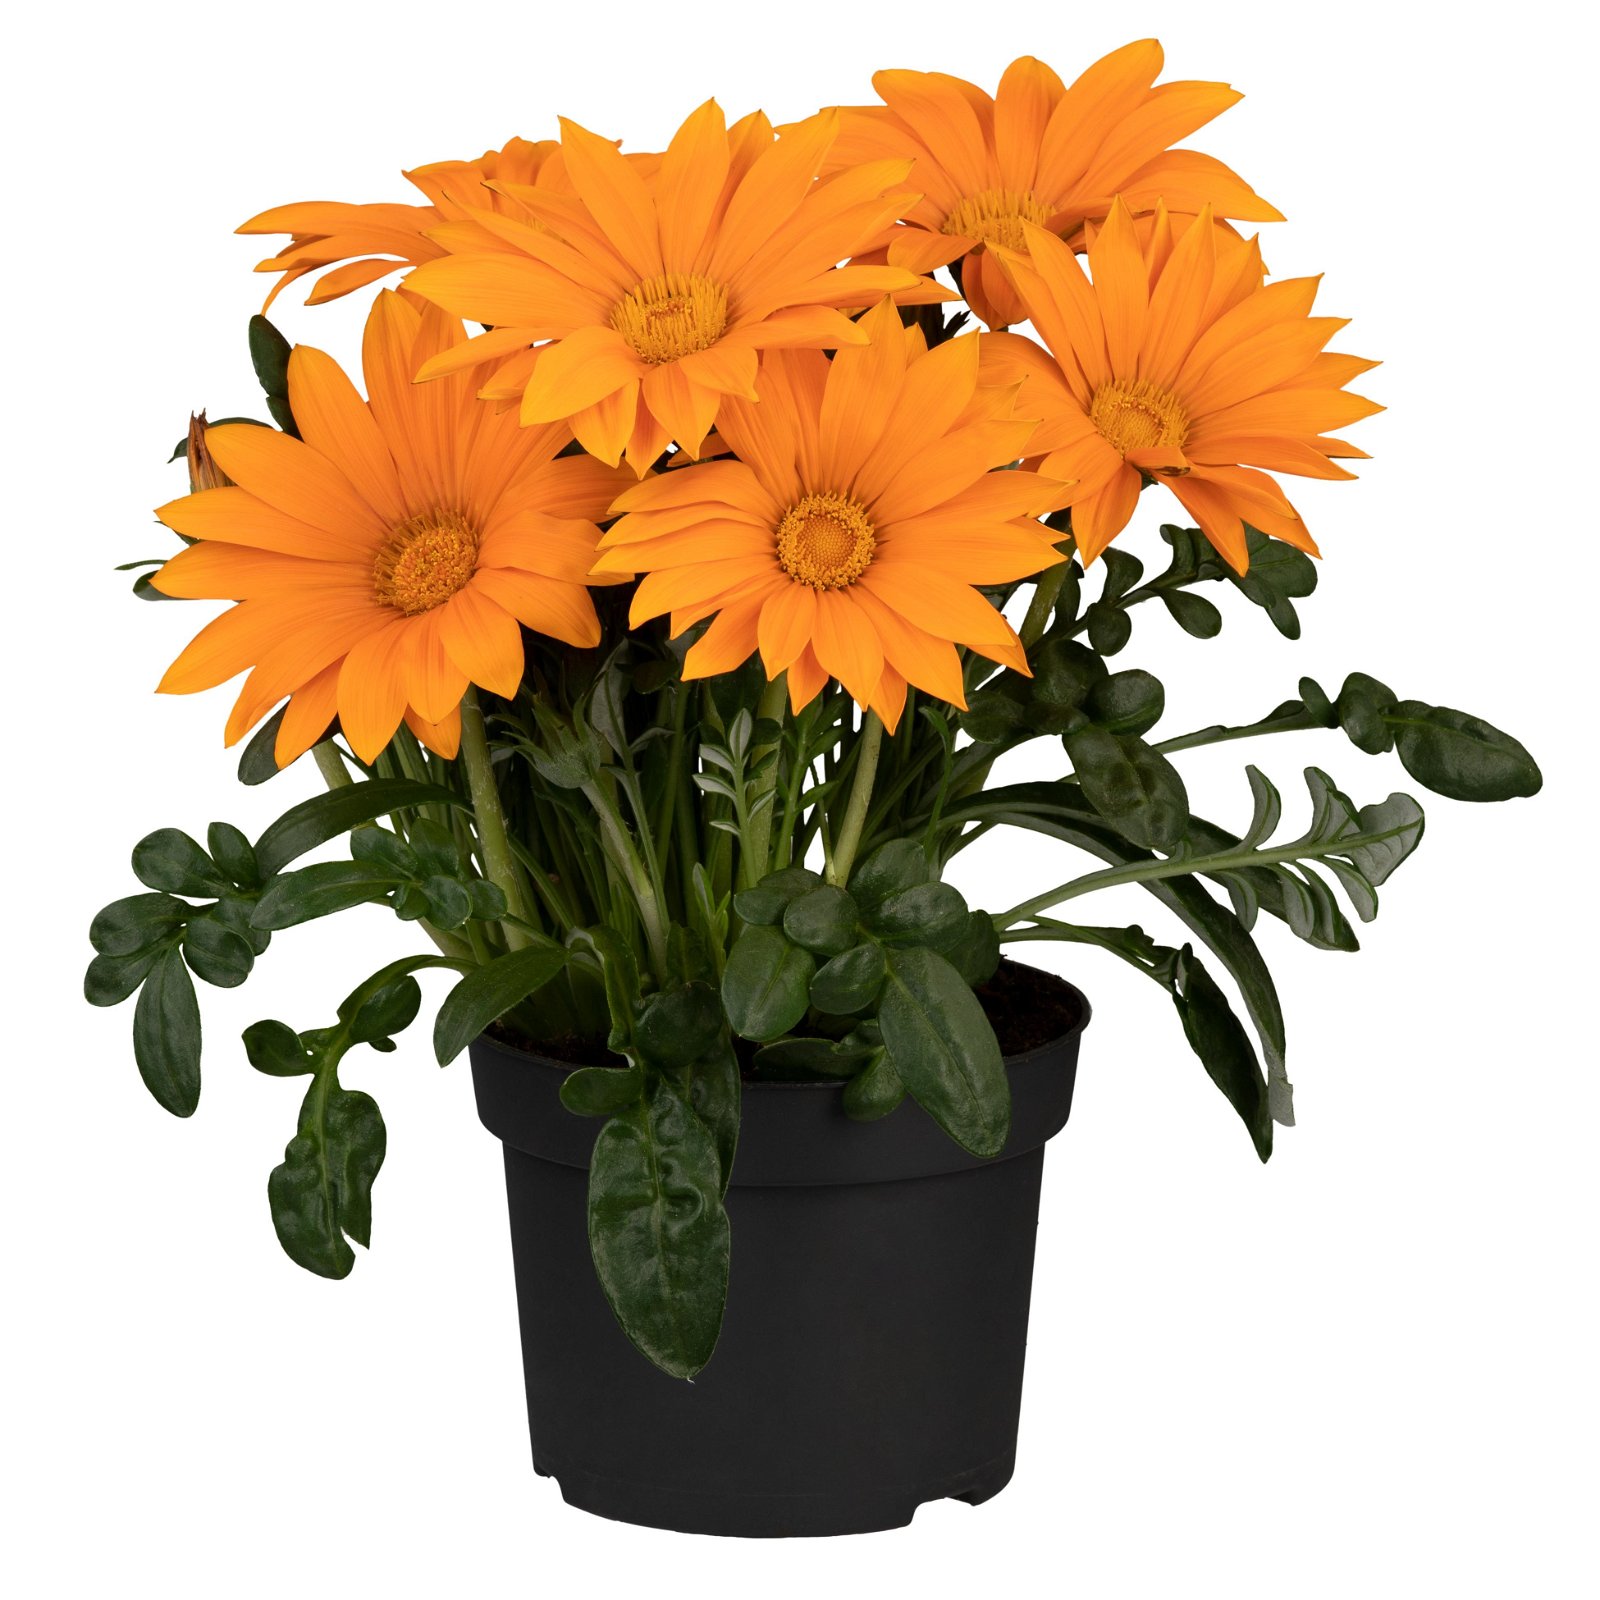 Mittagsgold orange, Topf -Ø 12 cm, 6er-Set